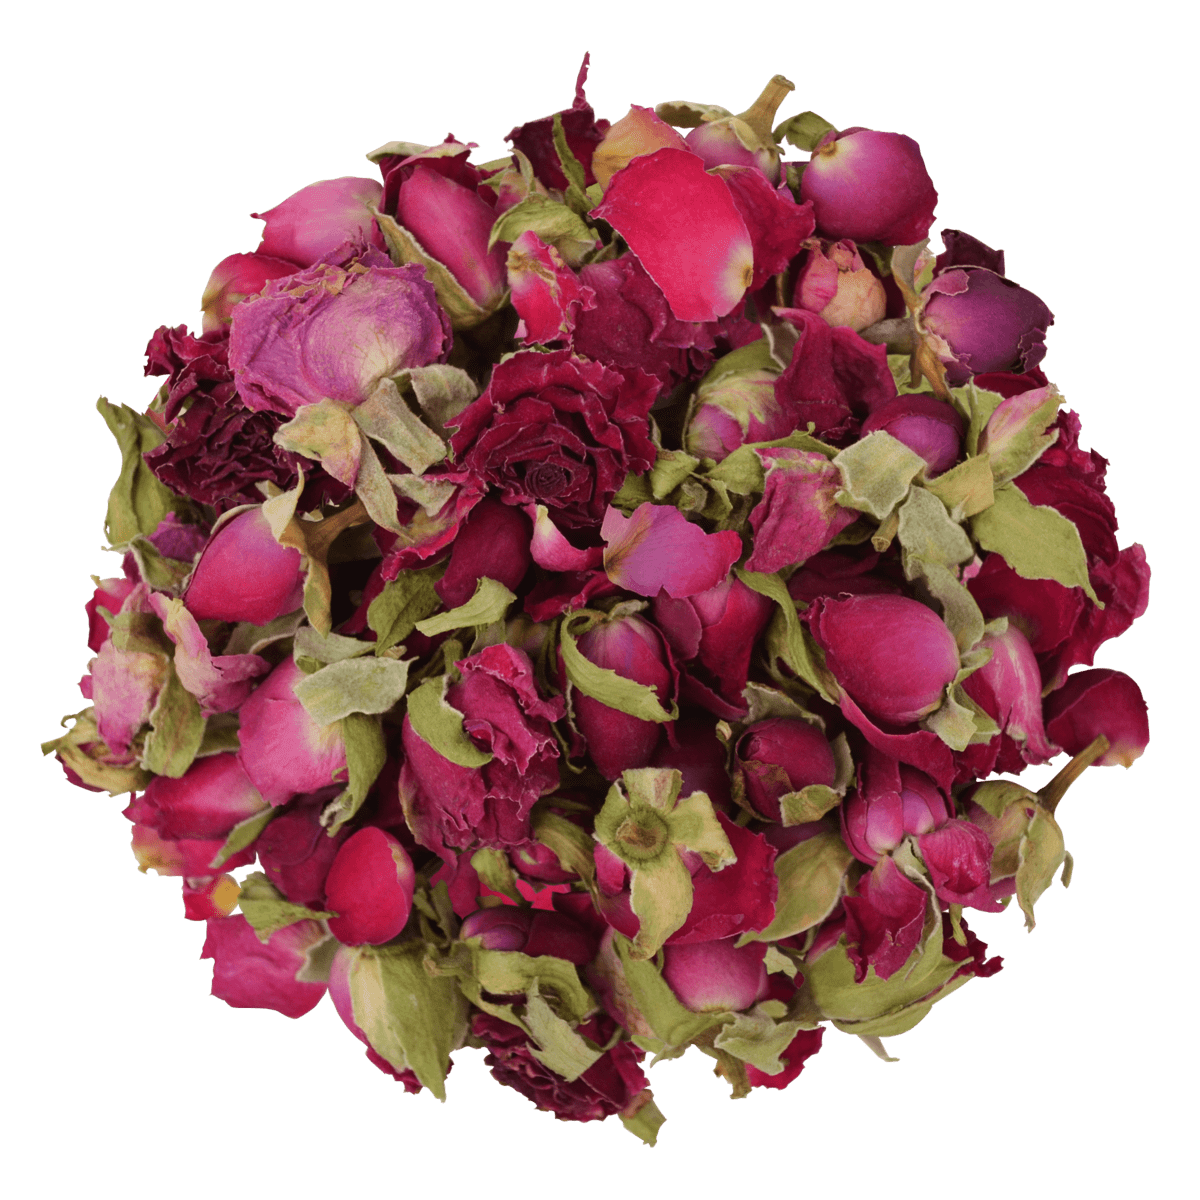 Entdecken Sie unsere hochwertigen Red Cherry Blumen als essbare Dekoration für Ihre Kuchen und Torten. Unsere essbaren Blumen für Torten sind eine schöne Art, um eine besondere Note zu Ihrem Backwerk hinzuzufügen. Sie sind perfekt für alle, die eine wunderschöne und köstliche Torte wünschen. Von ROSIE ROSE im Online-Shop kaufen